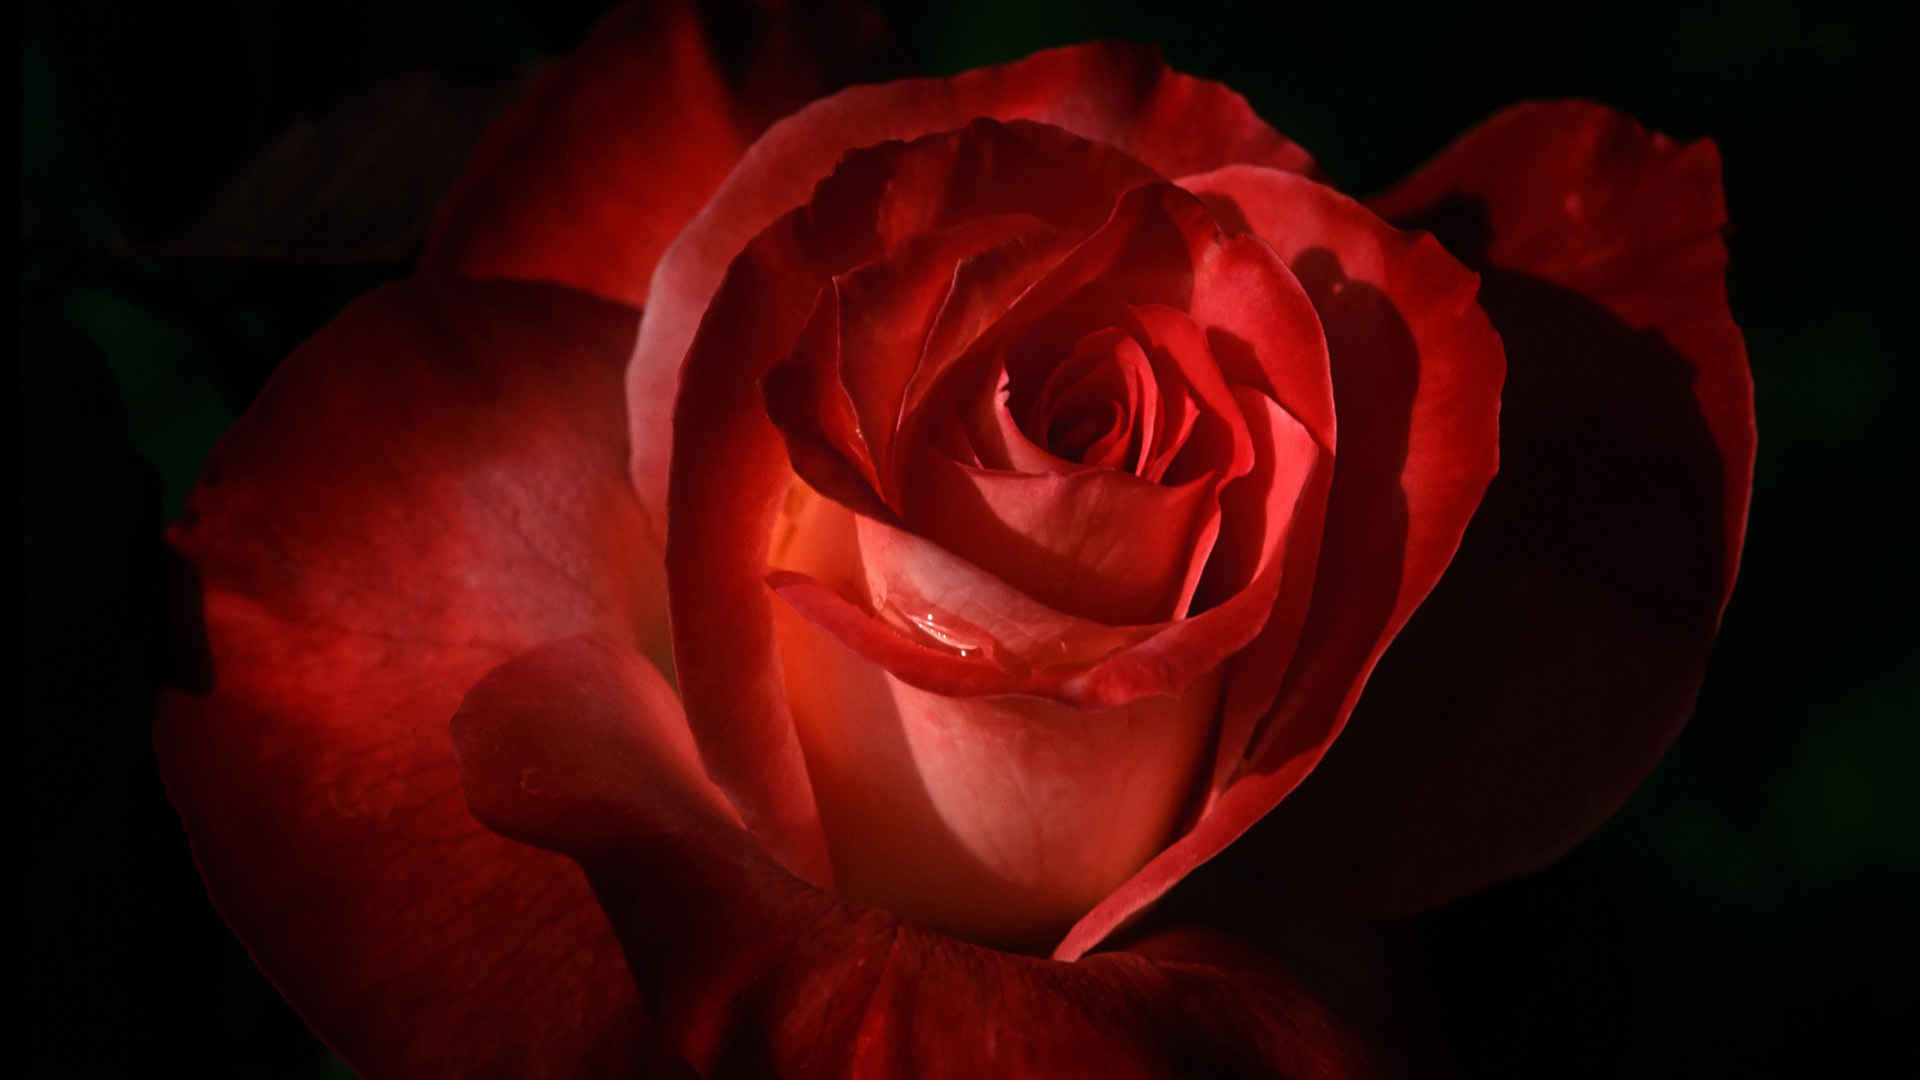 大红玫瑰花,微软官方主题高清壁纸